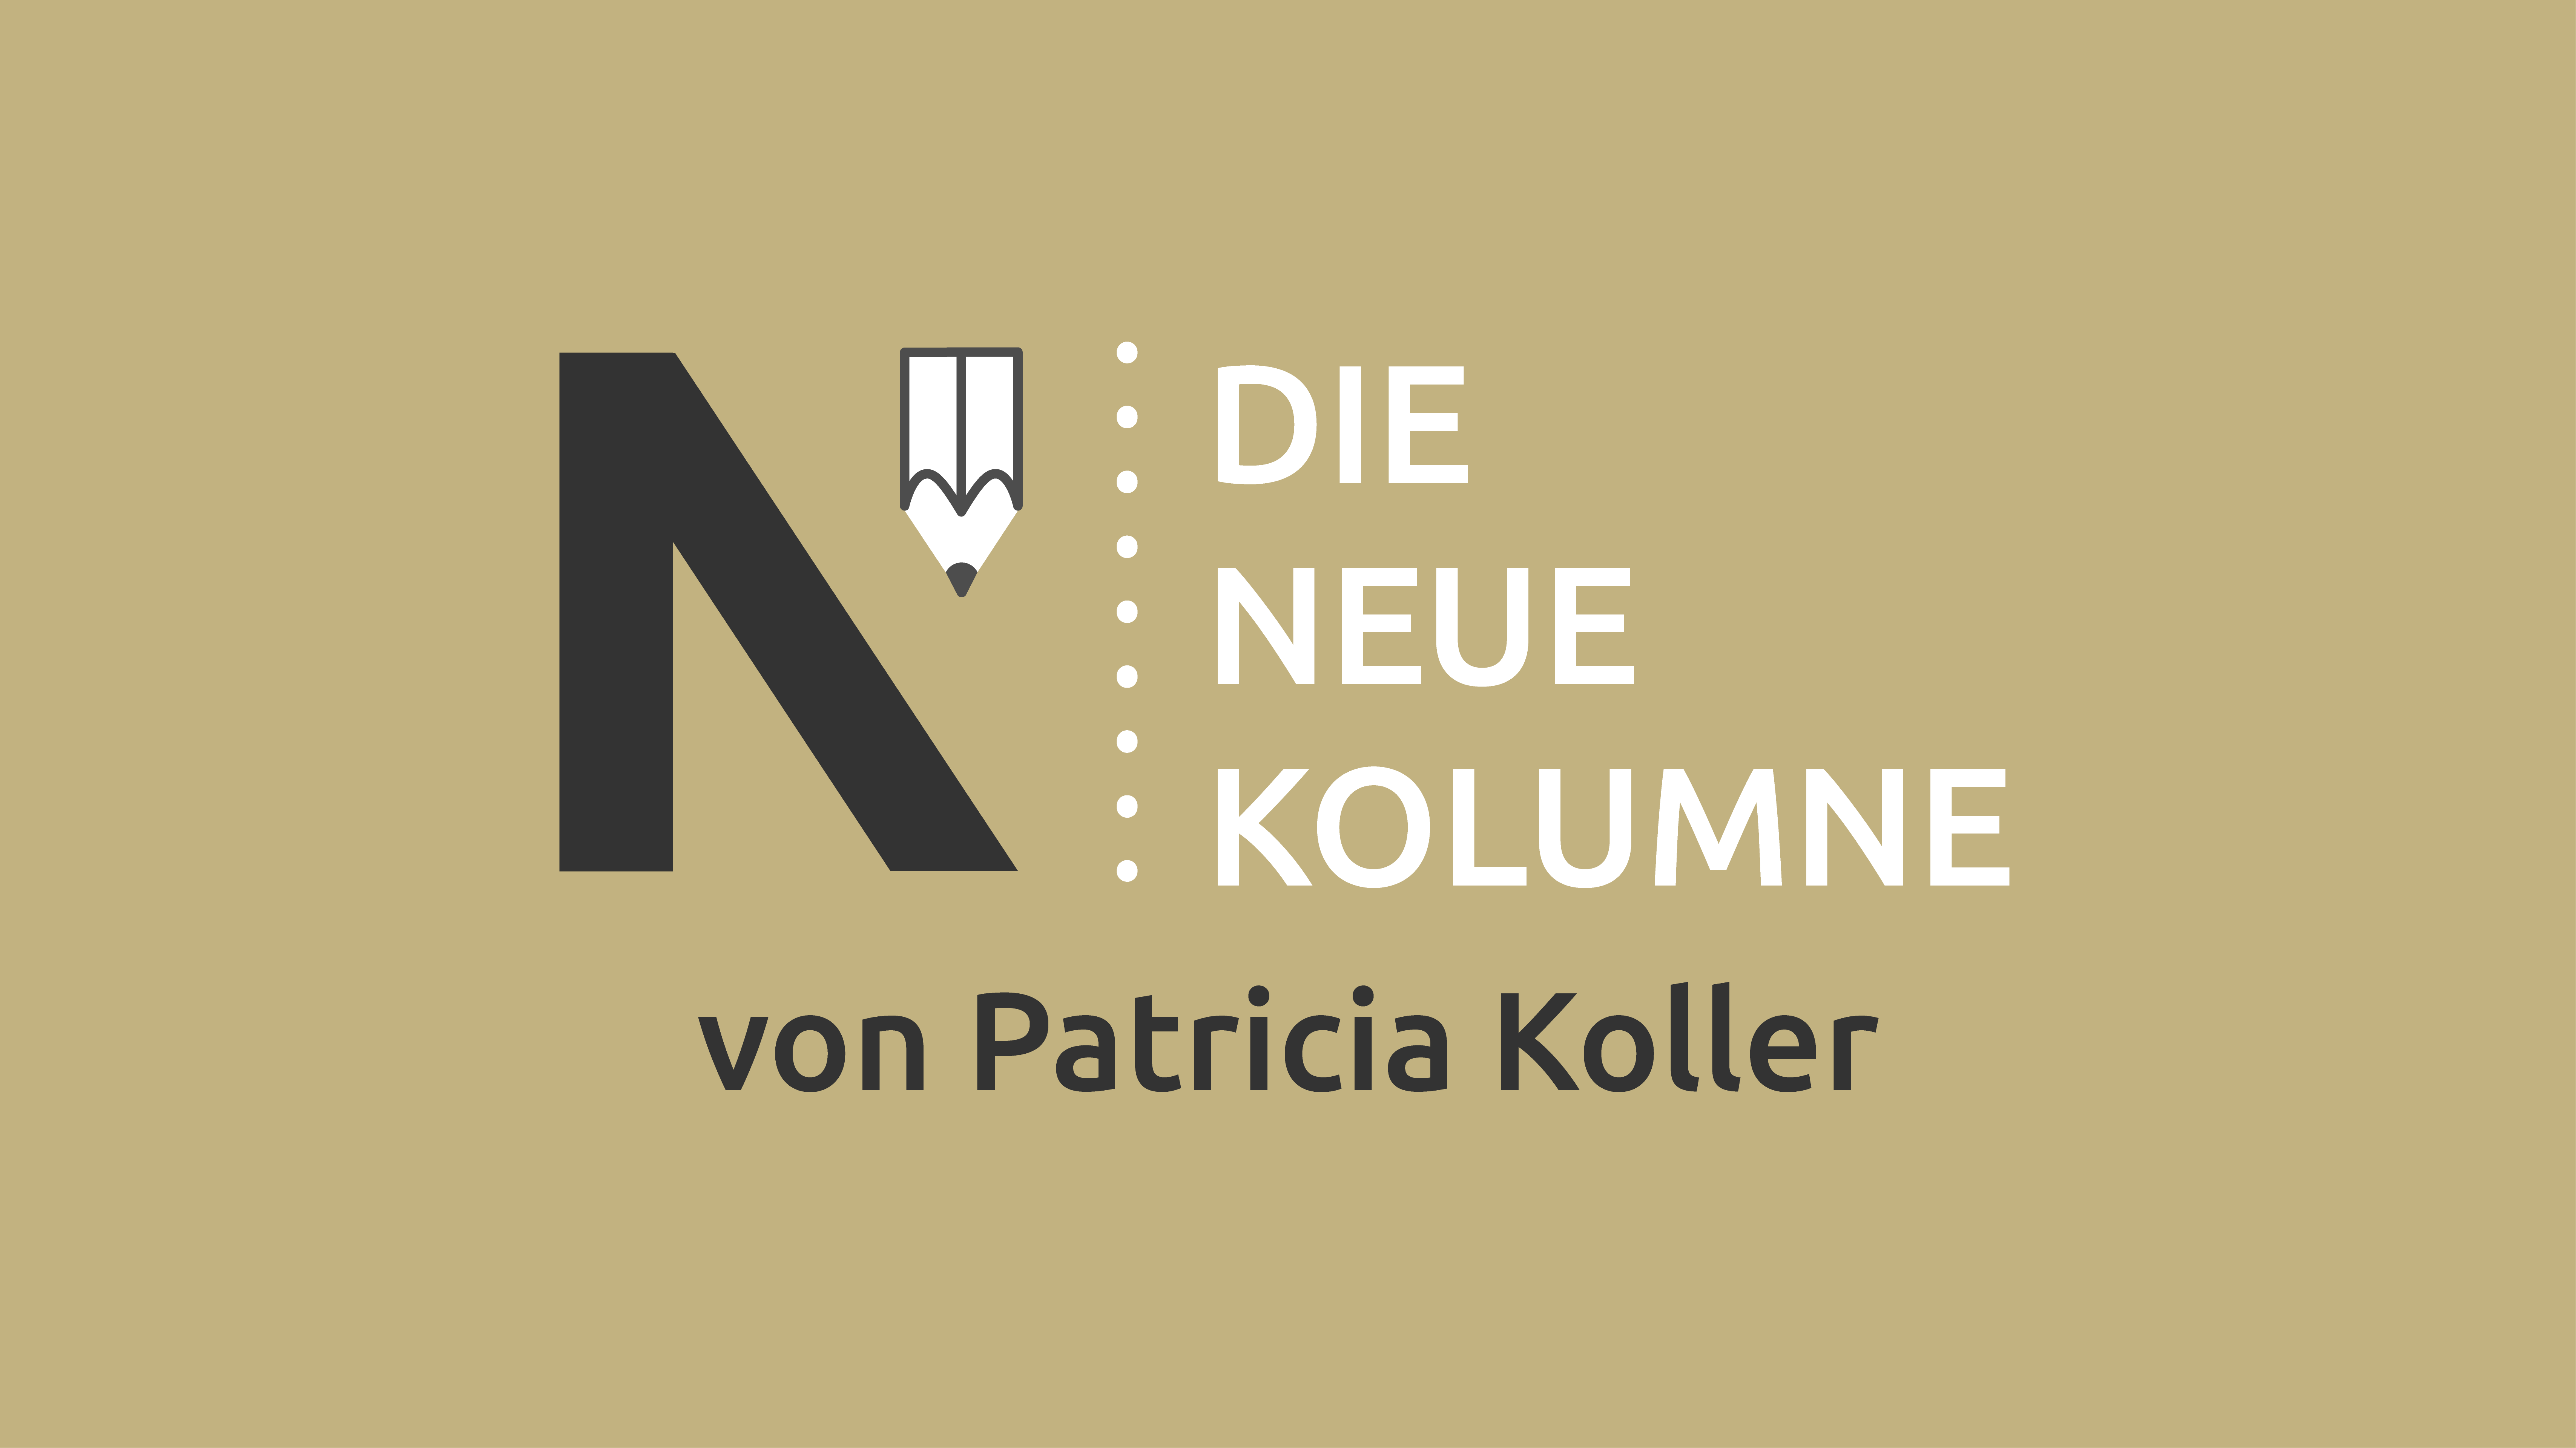 Das Logo von Die Neue Norm auf hellbraunem Grund. Rechts davon steht: Die Neue Kolumne. Unten steht: Von Patricia Koller.